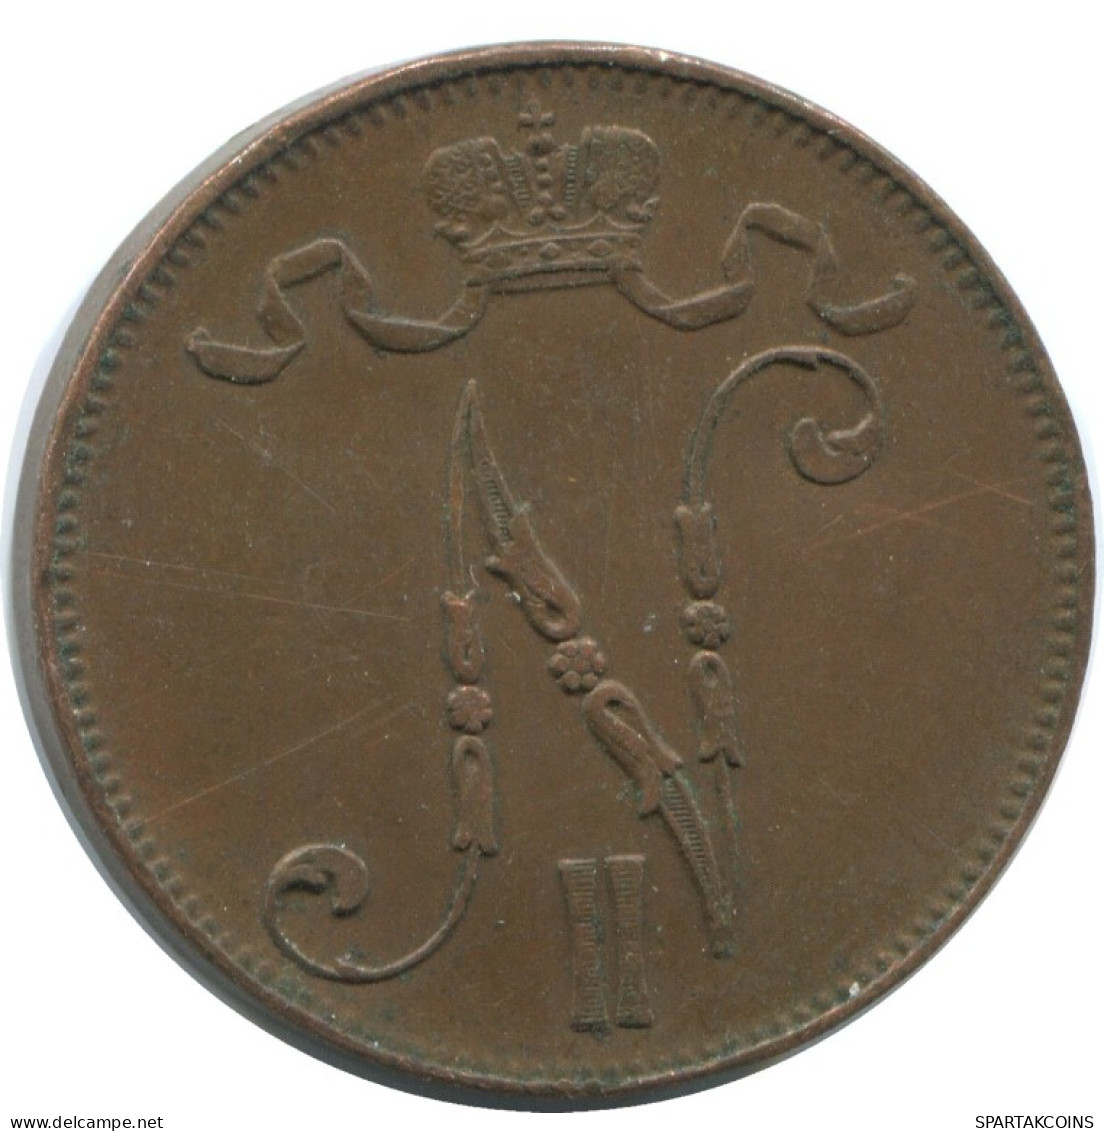 5 PENNIA 1916 FINLAND Coin RUSSIA EMPIRE #AB165.5.U.A - Finlande